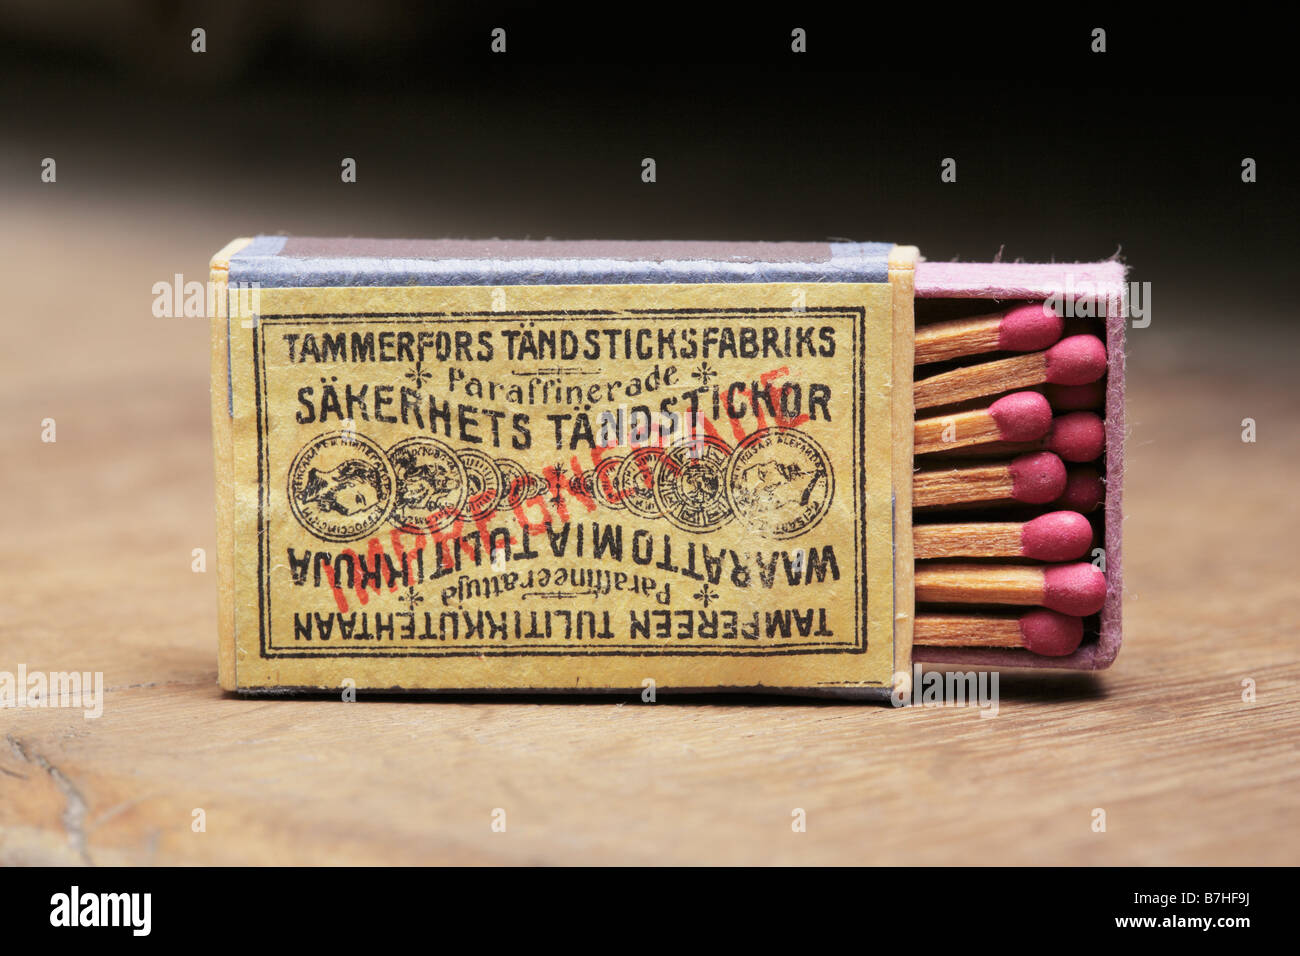 Vieille boîte d'allumettes de sûreté fabriqué à Tampere en Finlande au 19ème siècle Banque D'Images